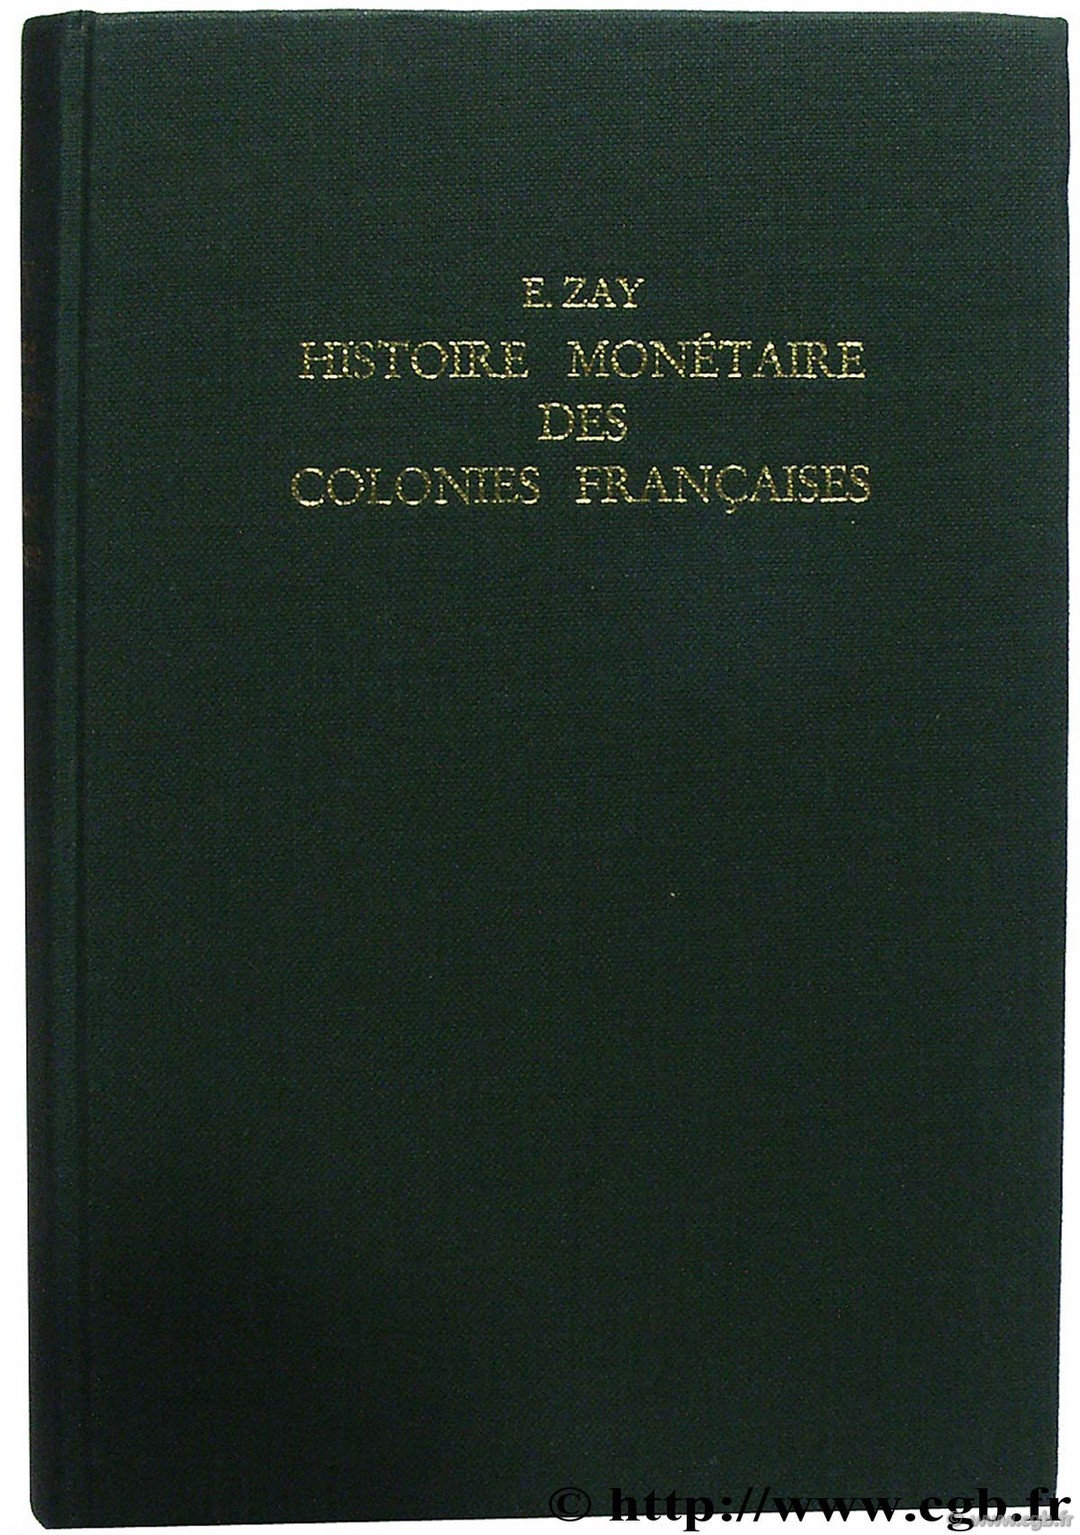 Histoire monétaire des Colonies françaises d après les documents officiels ZAY E.